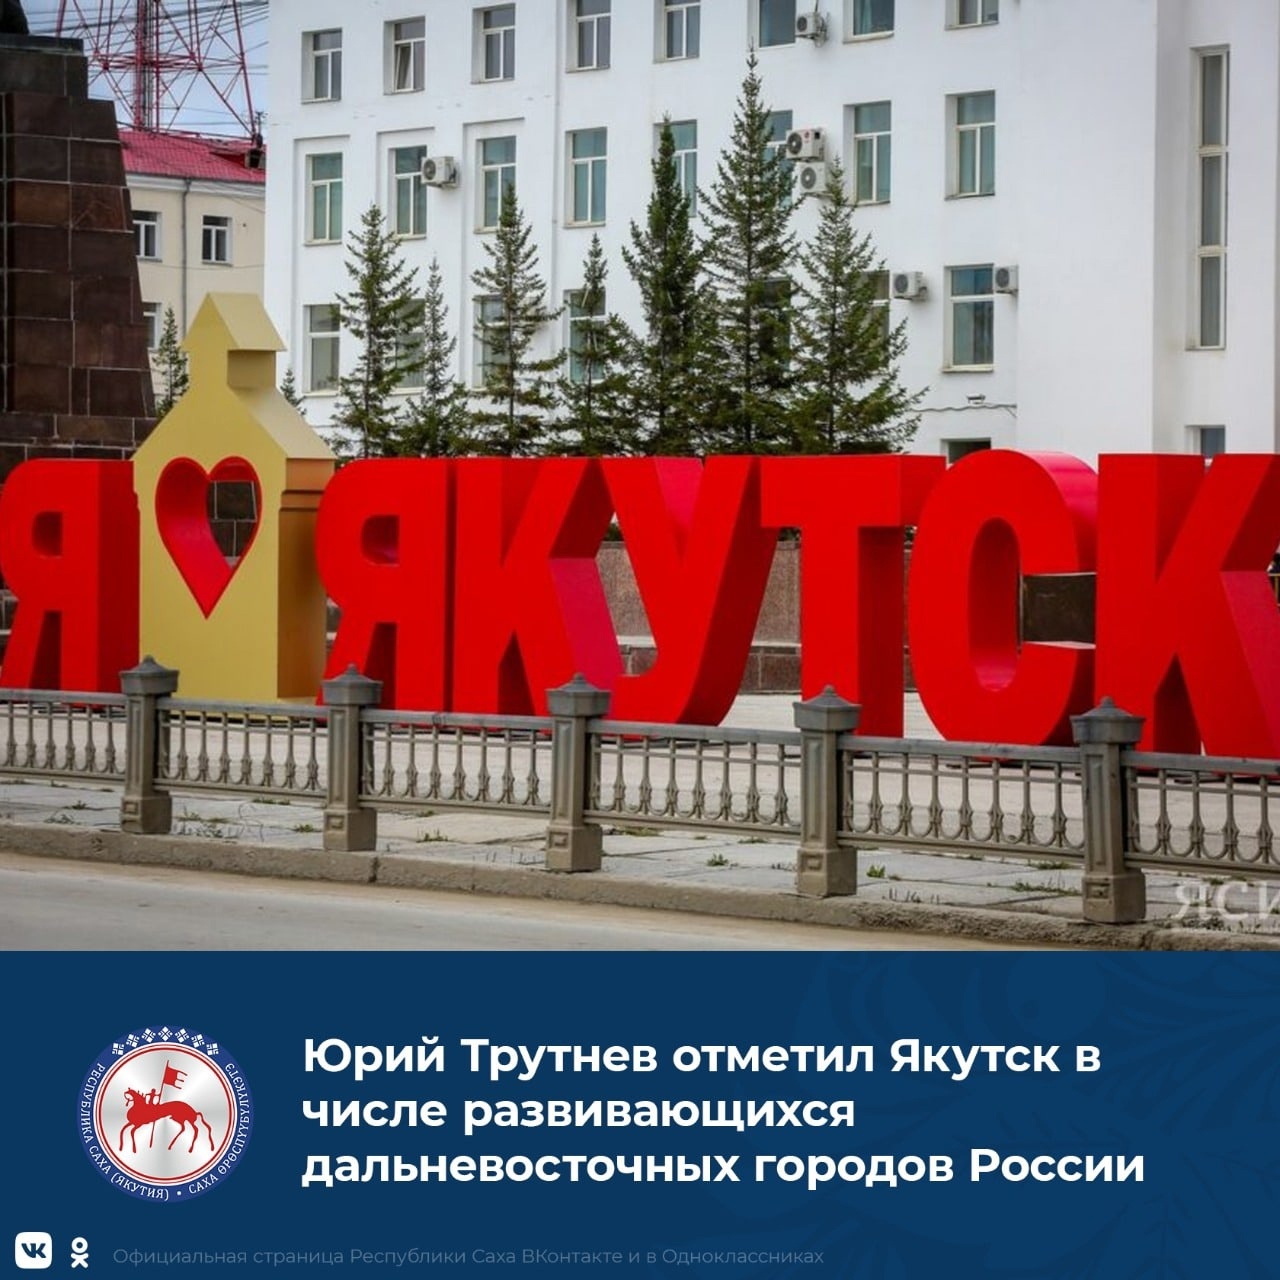 Якутску на выполнение функций столицы из бюджета региона выделили 0,5 млрд рублей